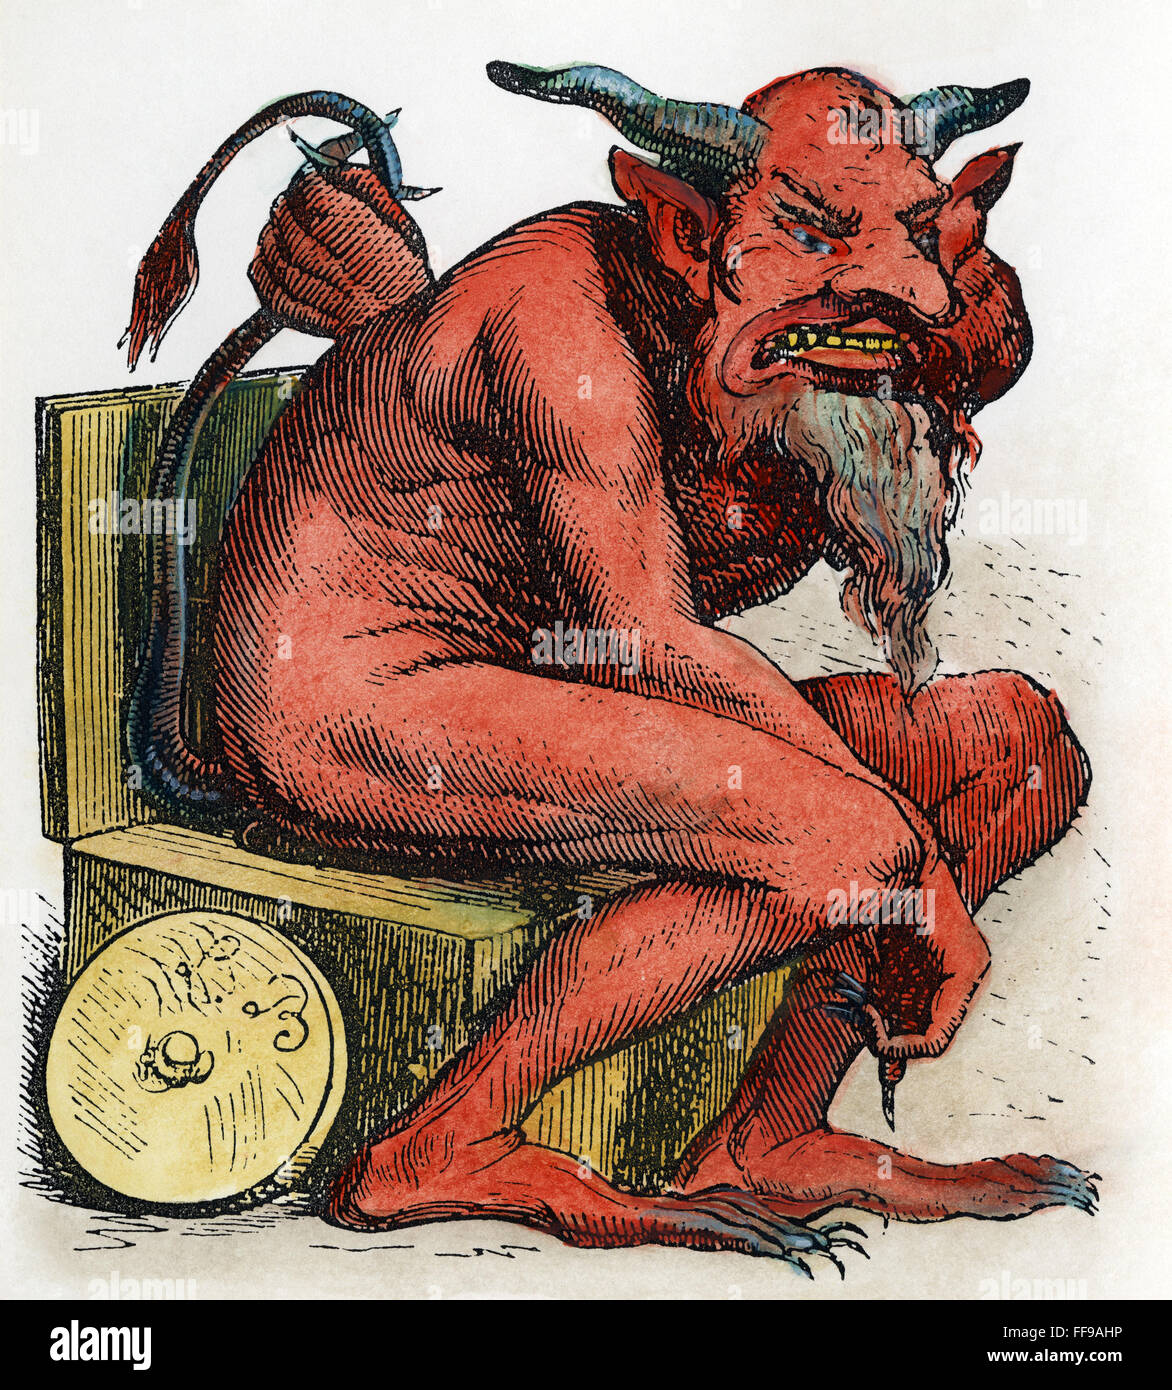 Diavolo: BELPHEGOR. /Nil demone biblica del male, adorato dai Moabiti (Numeri 25:3): incisione su legno, francese del XIX secolo. Foto Stock